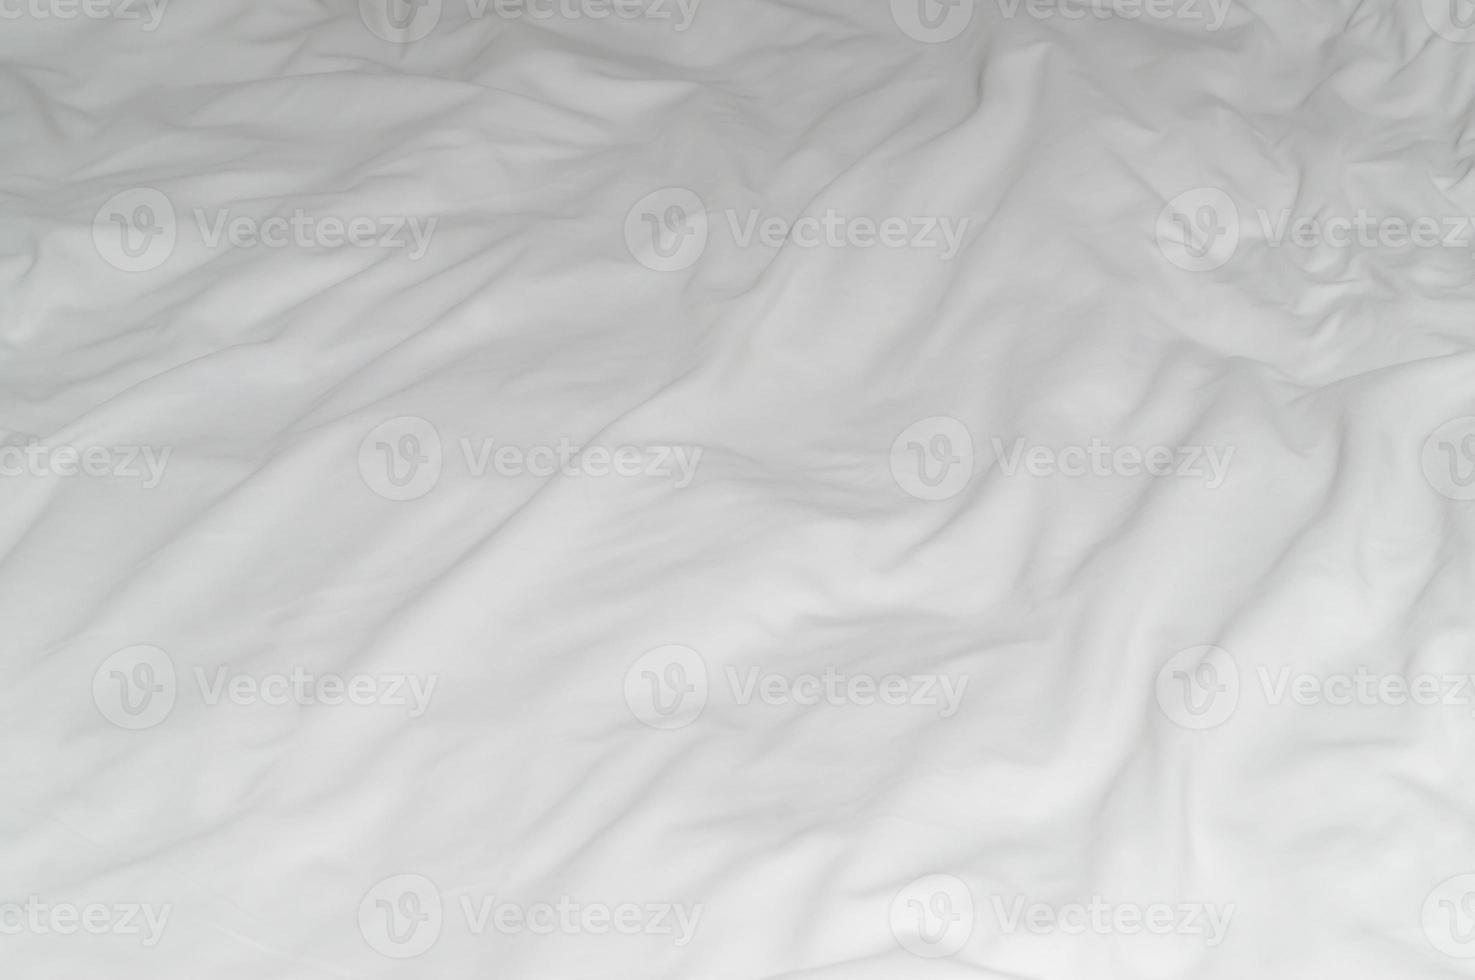 sábana o manta blanca arrugada o arrugada con patrón después del uso del huésped en el hotel, habitación de resort con espacio para copiar, textura de fondo de manta desordenada foto